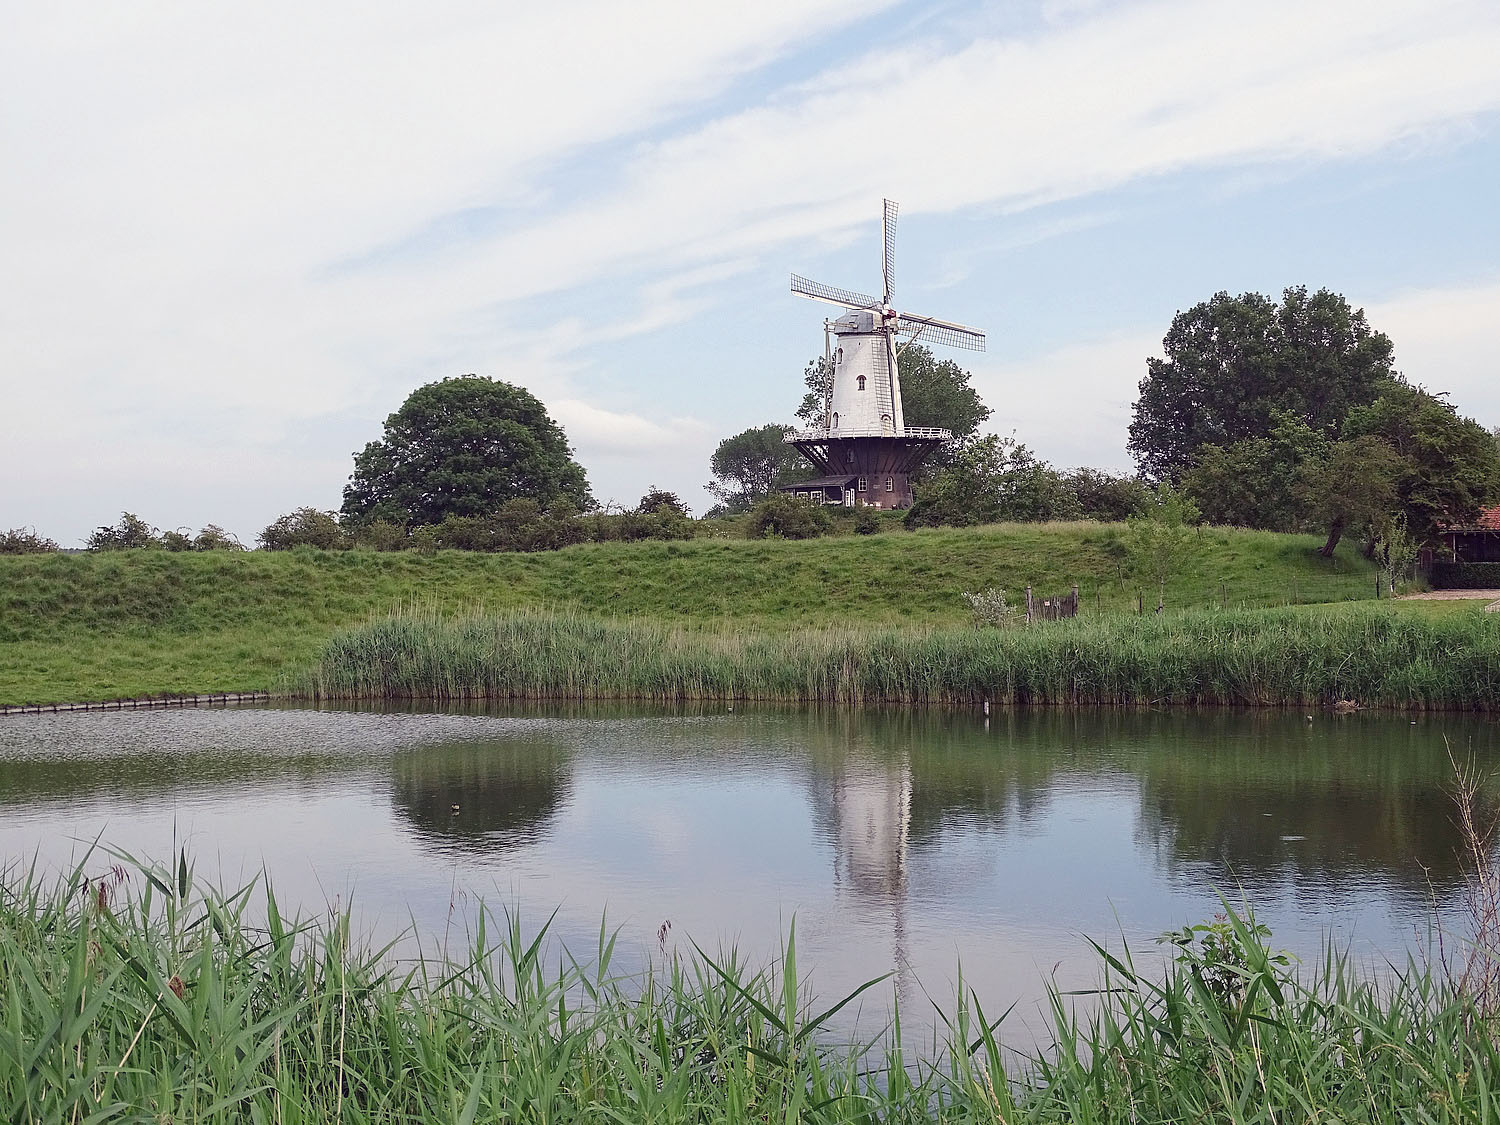 Sieht man von Wind und Wetter ab, bieten unsere niederländischen Nachbarn ein vorbildliches Wegenetz für "Fietsen". Ein idealer Ausgangspunkt für unsere Radtour ist der kleine Ort Oostkapelle.